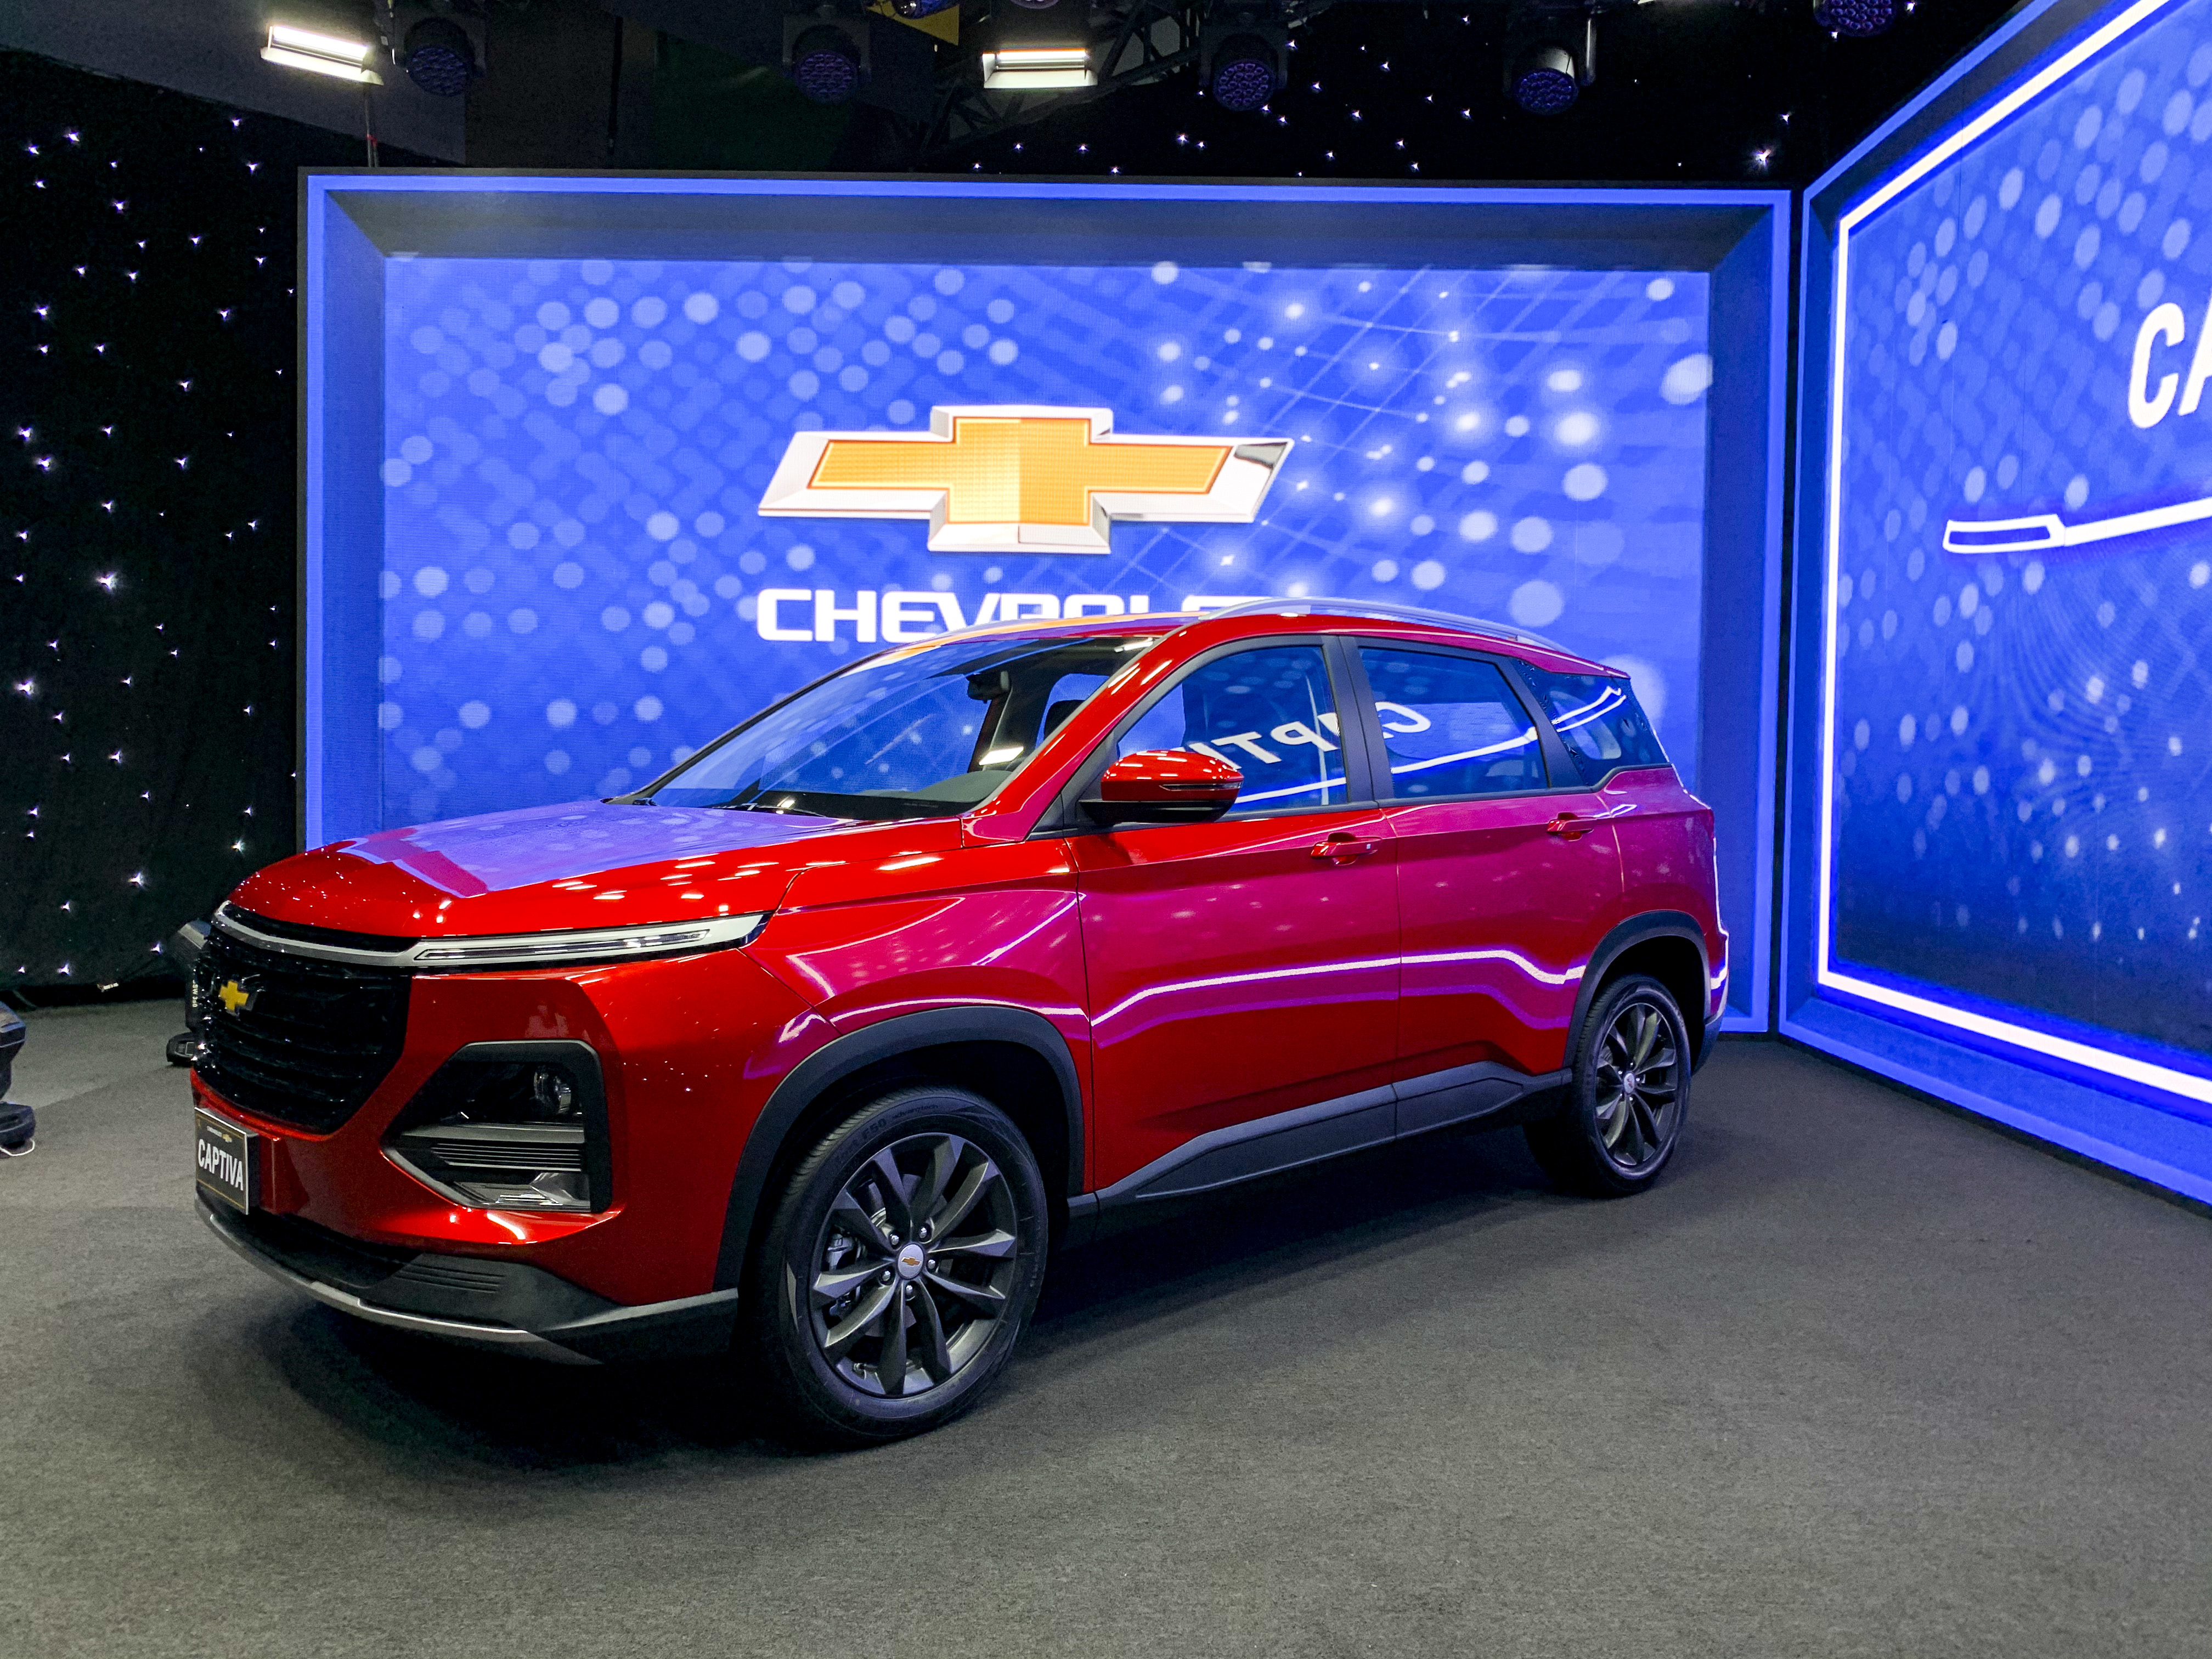 La nueva SUV Chevrolet Captiva ya está disponible en el país. Foto Prensa Libre: Cortesía.